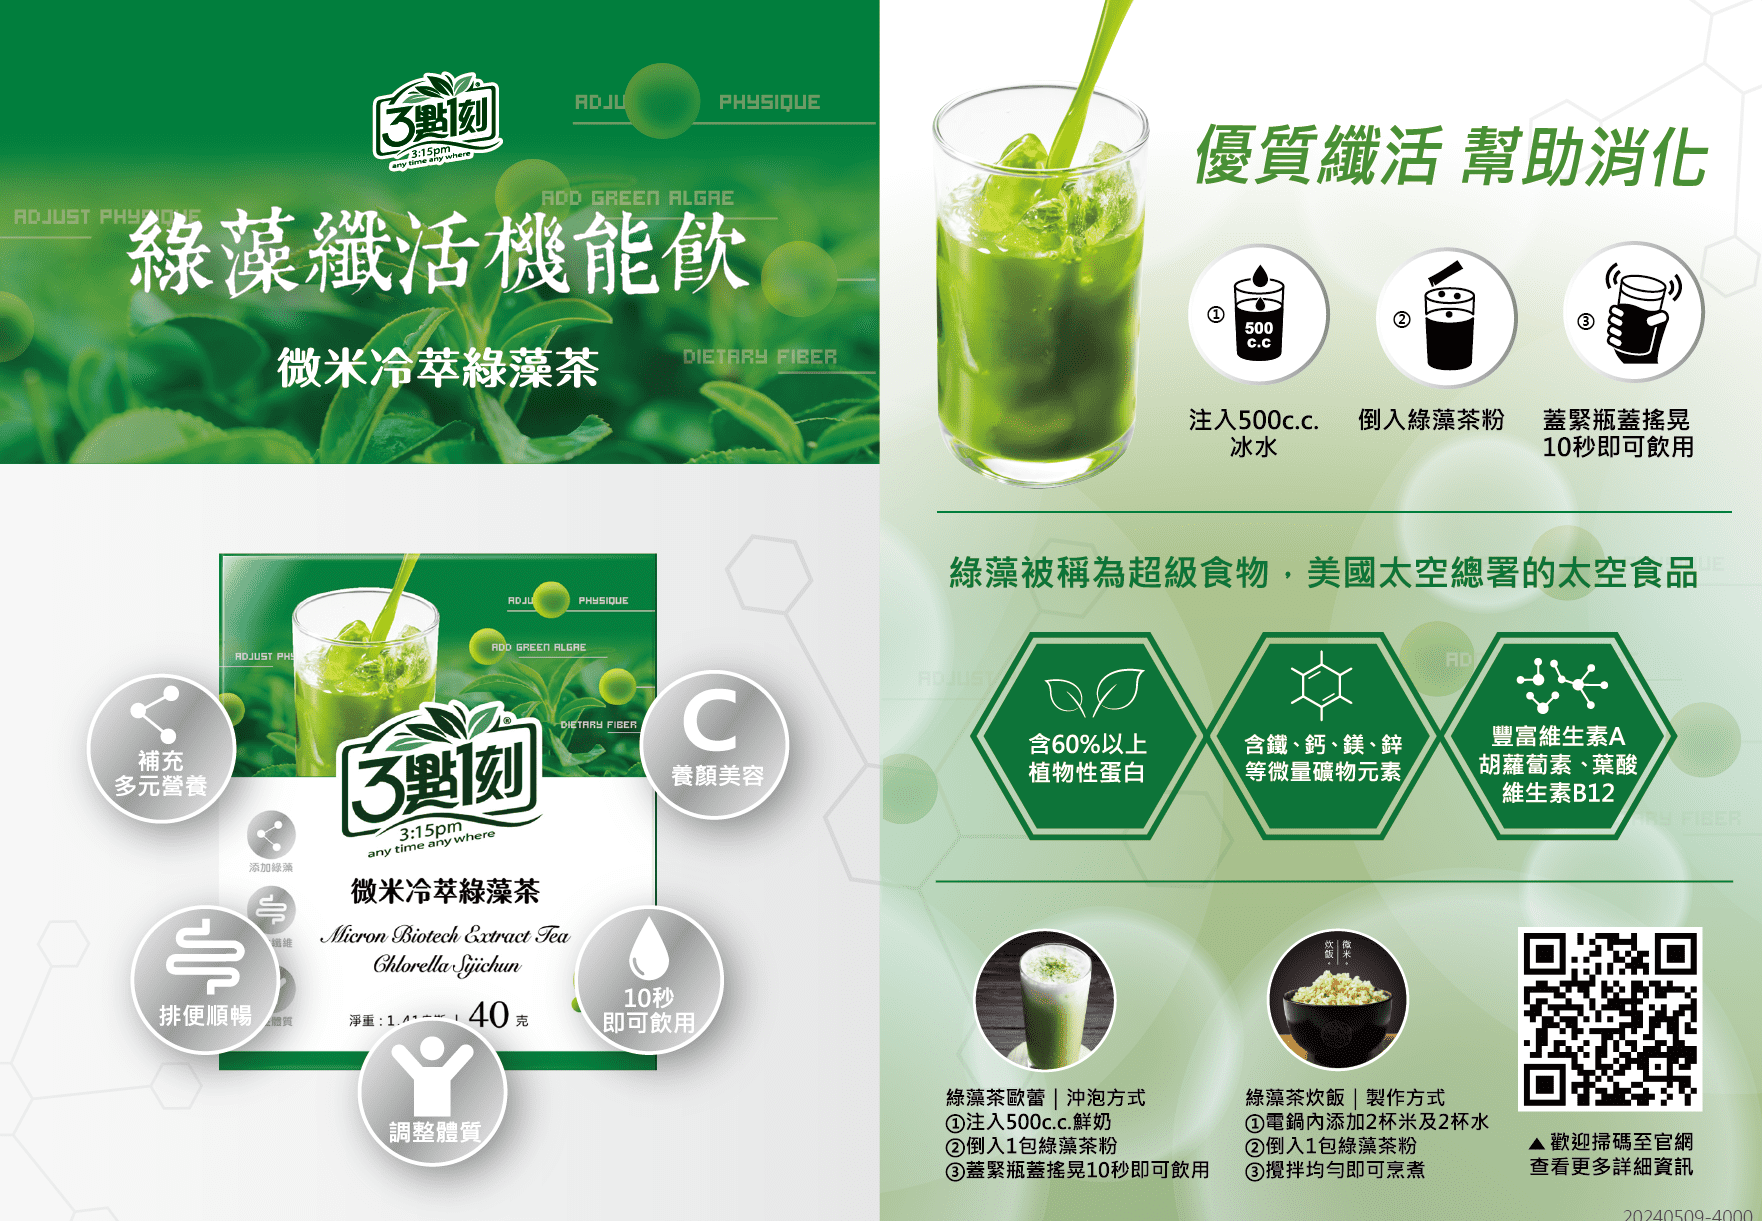 【產品介紹】綠藻鮮活機能飲